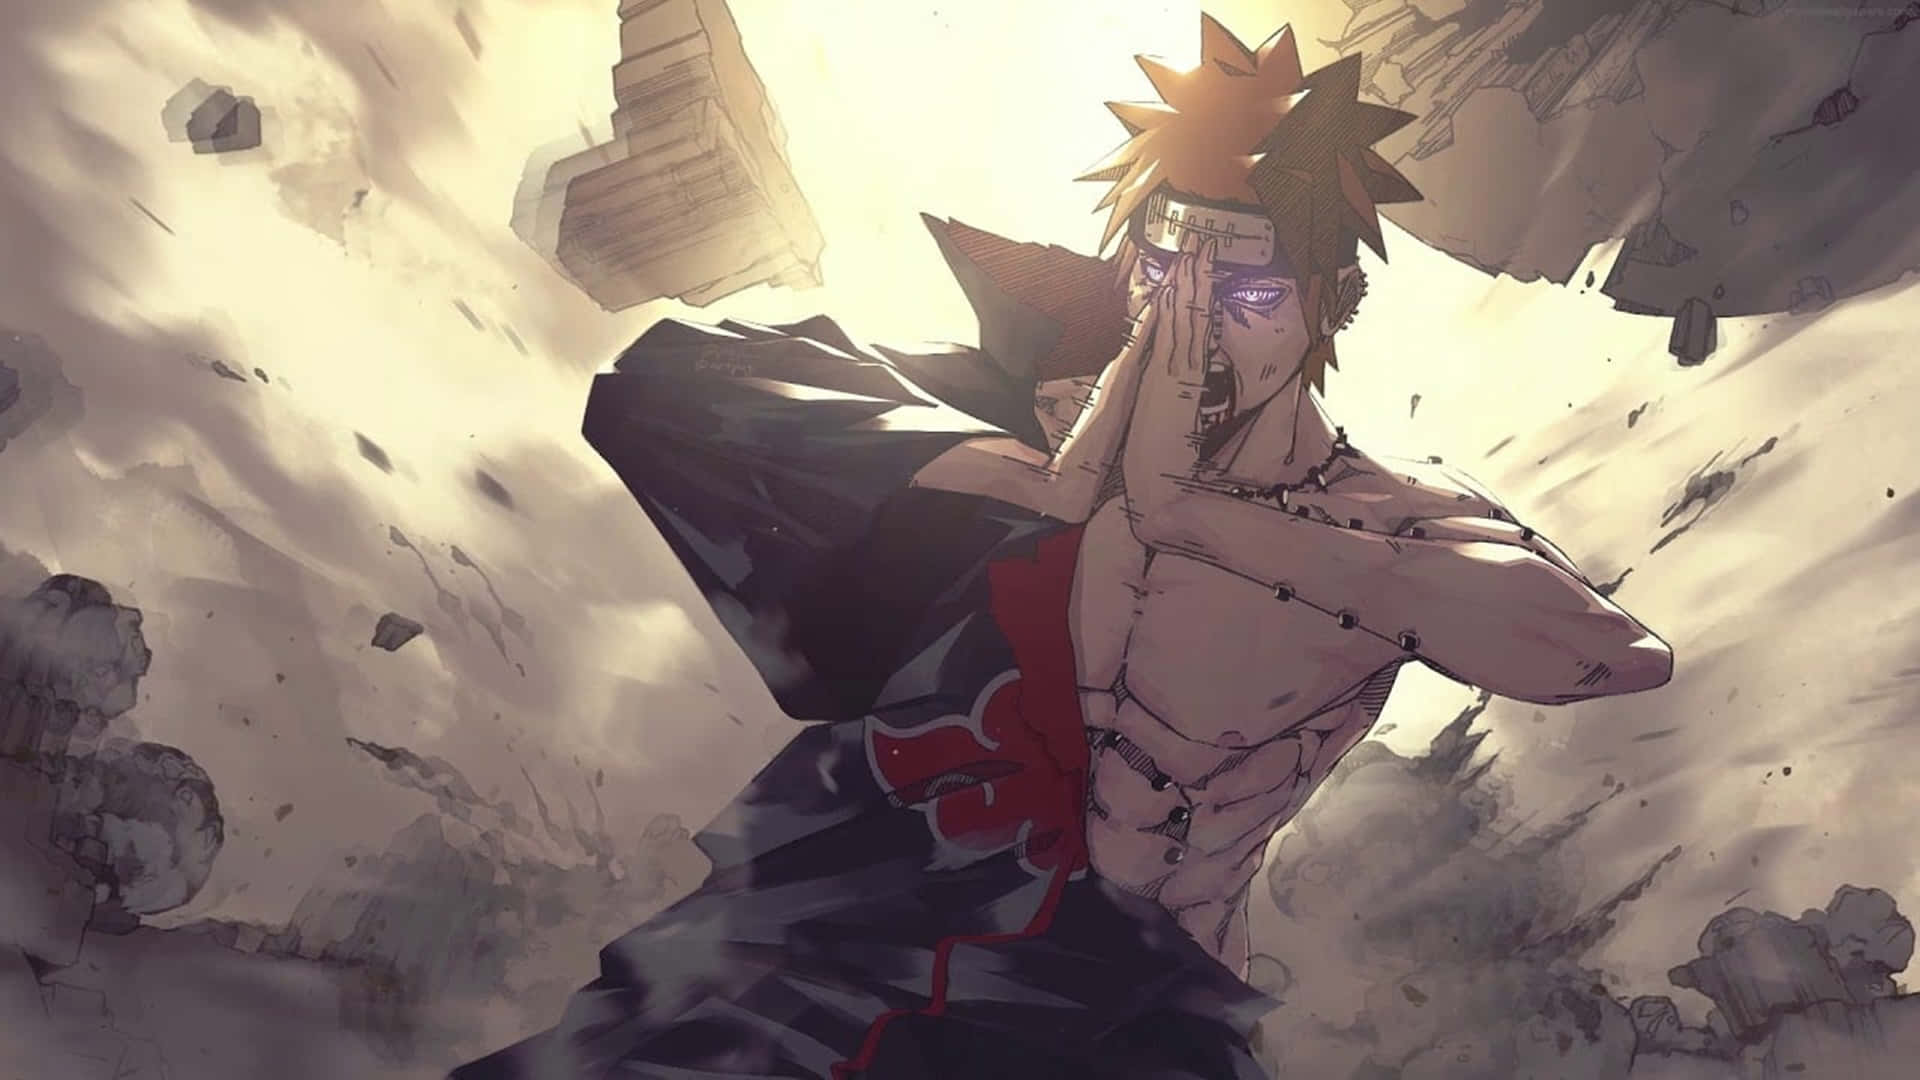 Naruto And Pain Facing Down Devastating Futures